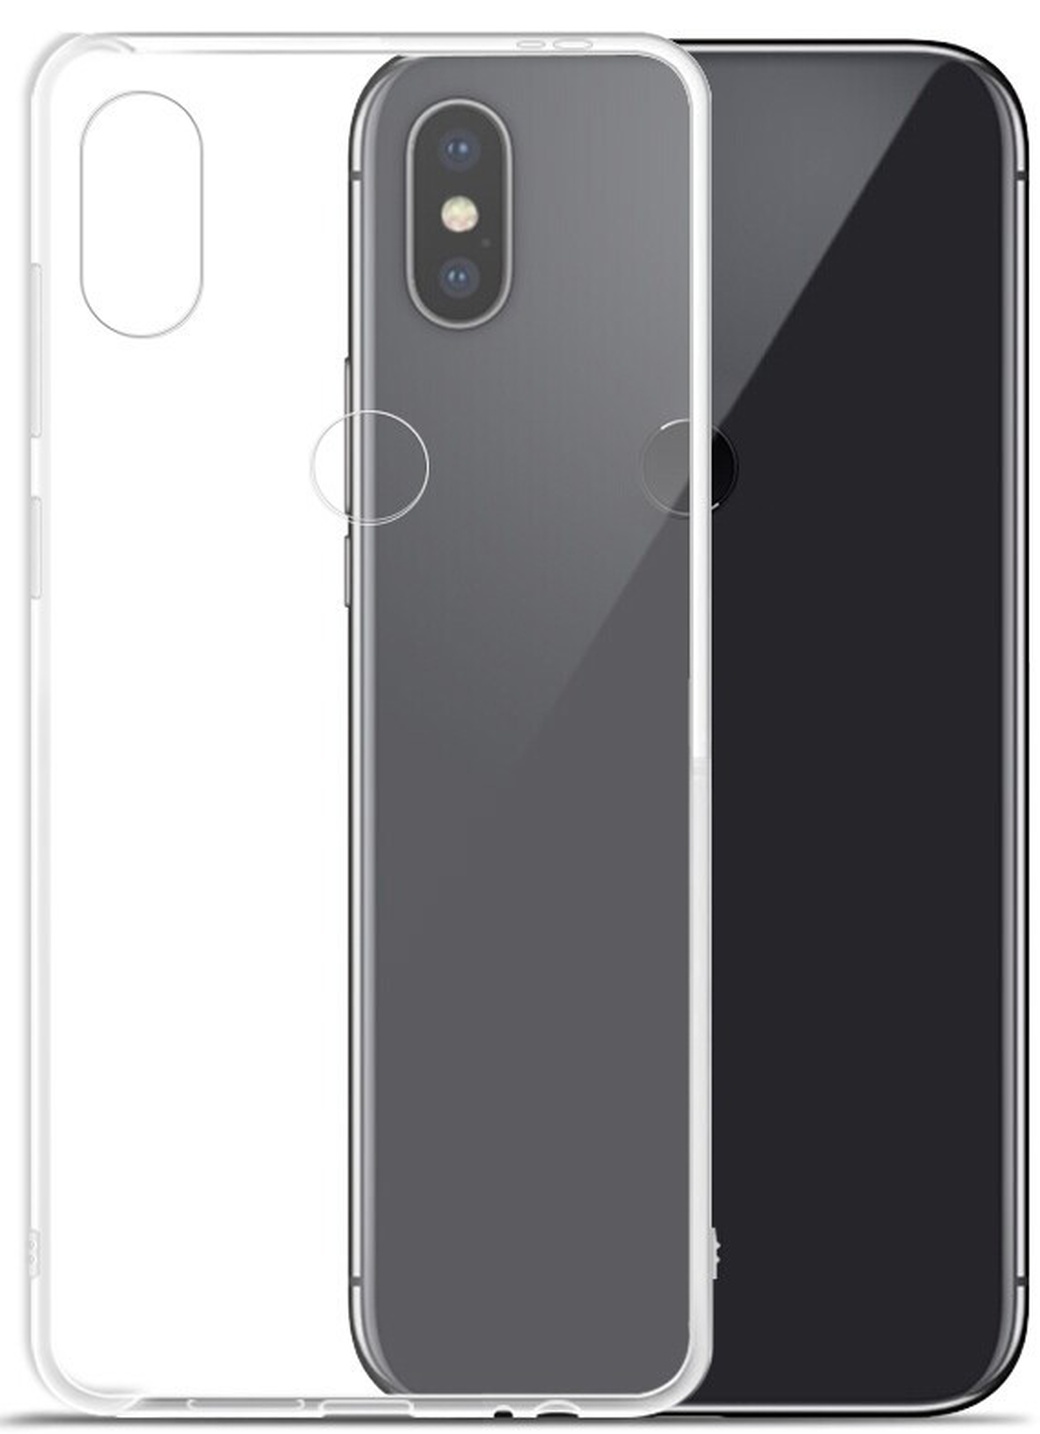 Чехол для смартфона Xiaomi Redmi Note 6 Pro силиконовый прозрачный, BoraSCO фото